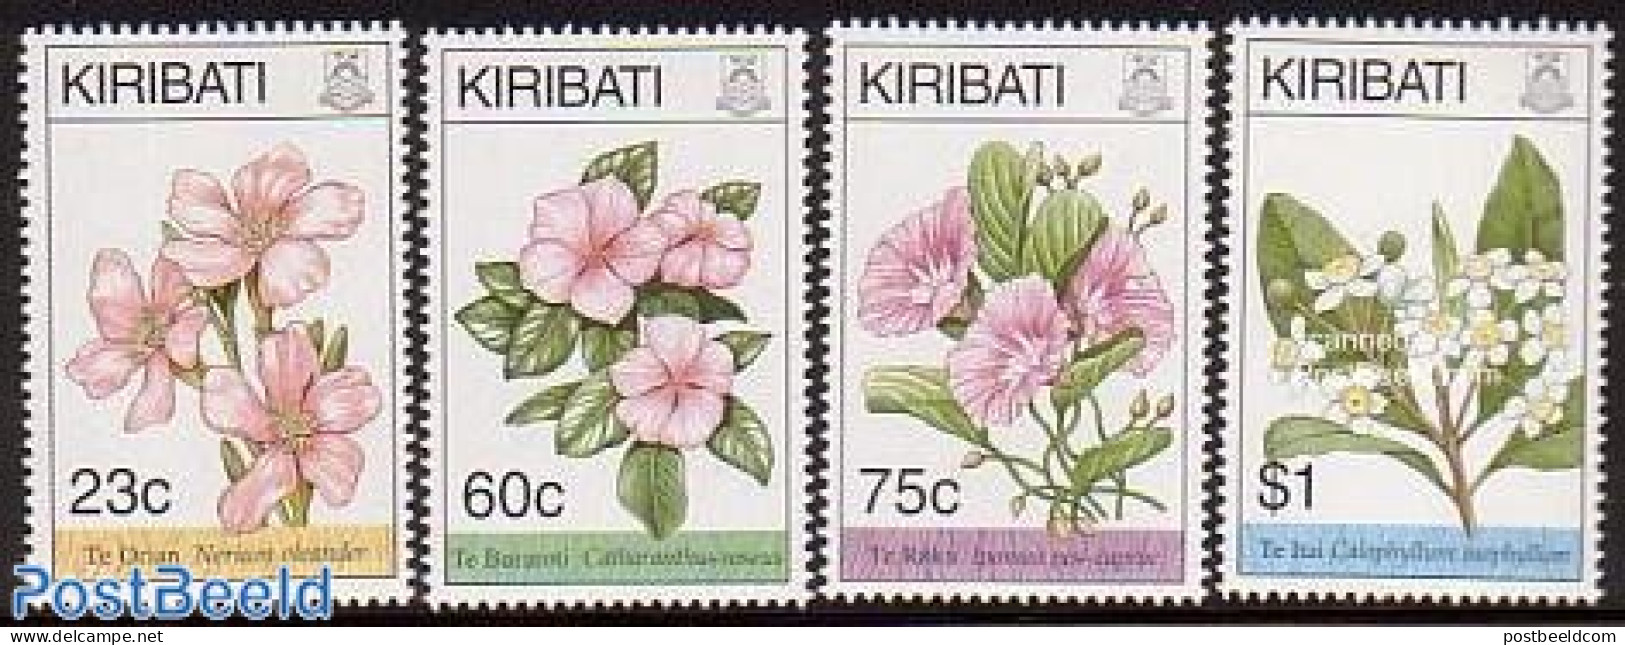 Kiribati 1994 Flowers 4v, Mint NH, Nature - Flowers & Plants - Kiribati (1979-...)